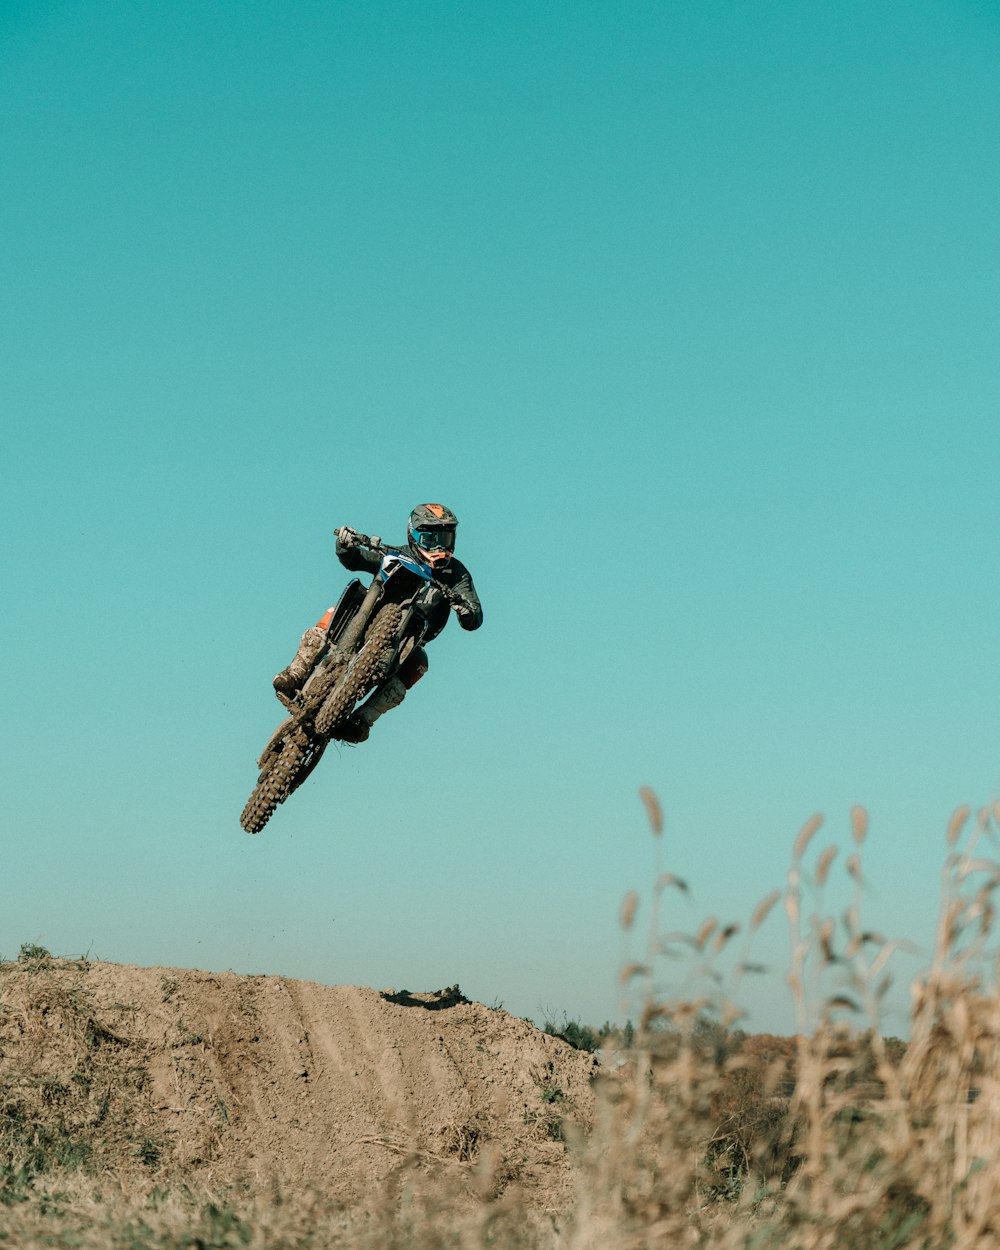 a man riding a dirt bike through the air